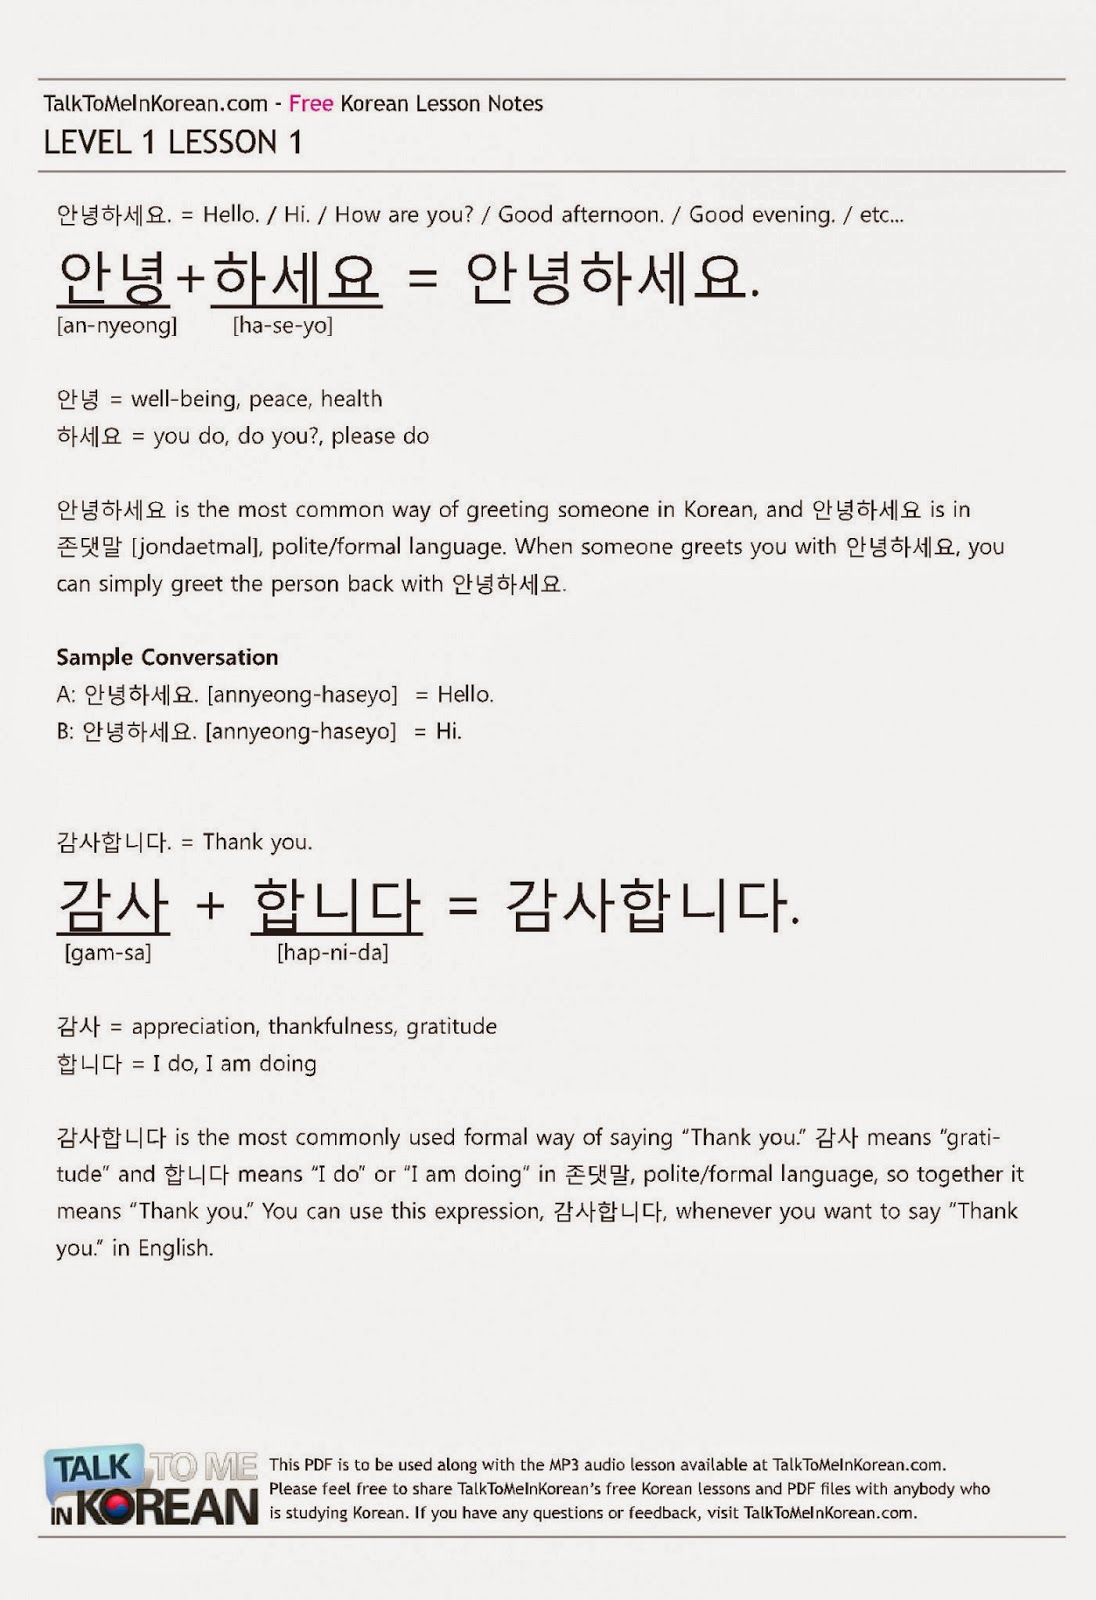 File học tiếng Hàn theo bài khi tải về